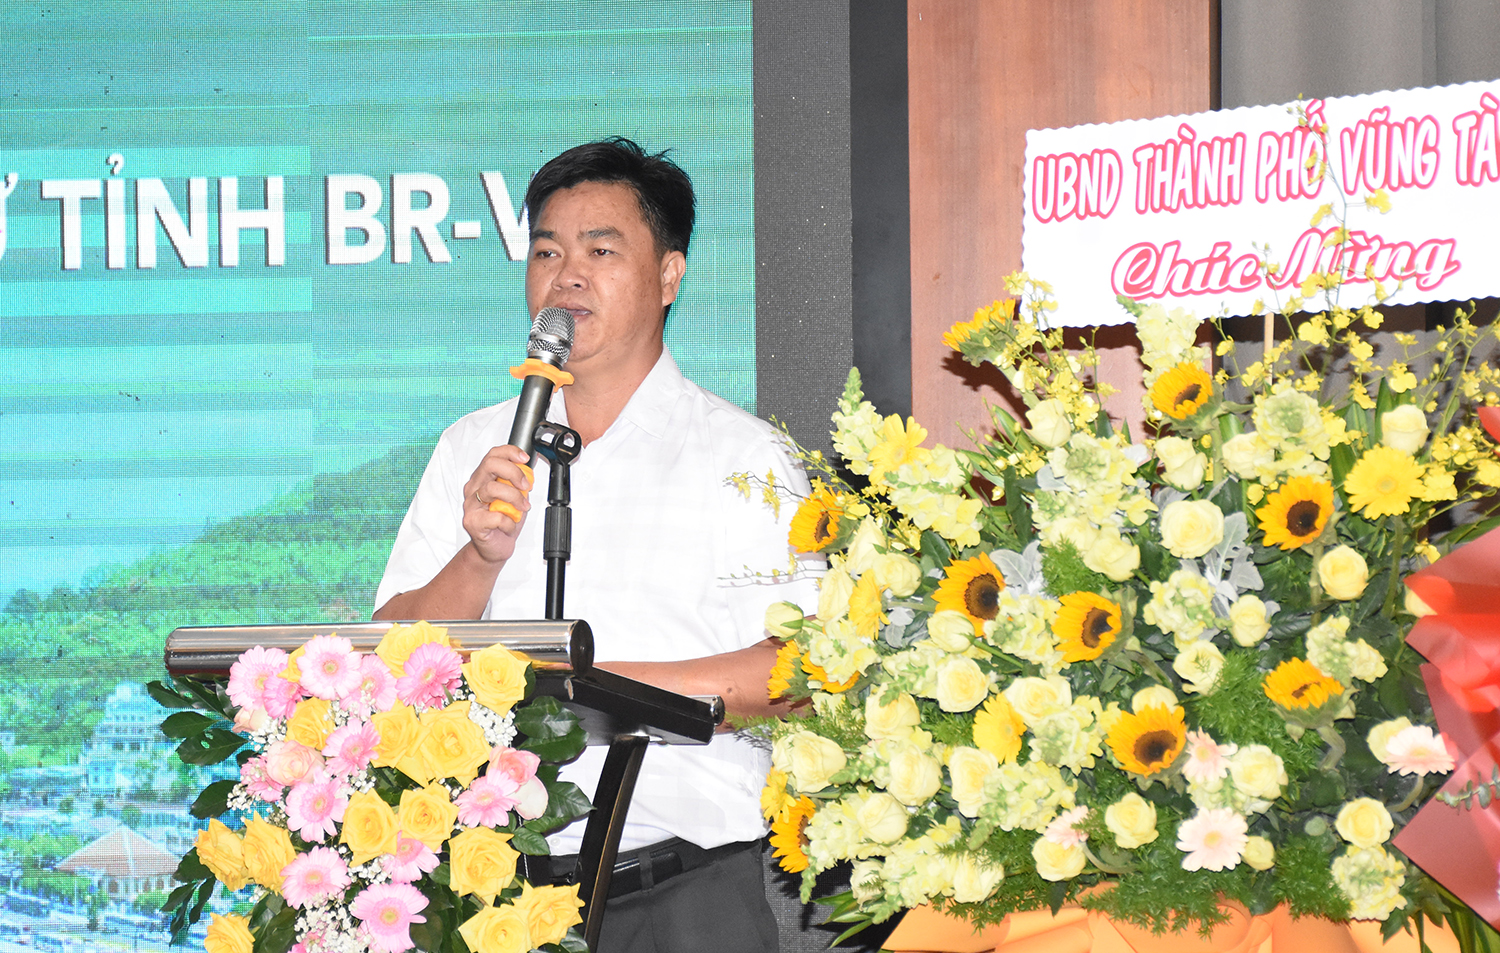 Phát biểu tại buổi lễ, ông Lê Văn Minh đánh giá cao những đóng góp của Hội KTS tỉnh đối với sự phát triển của địa phương